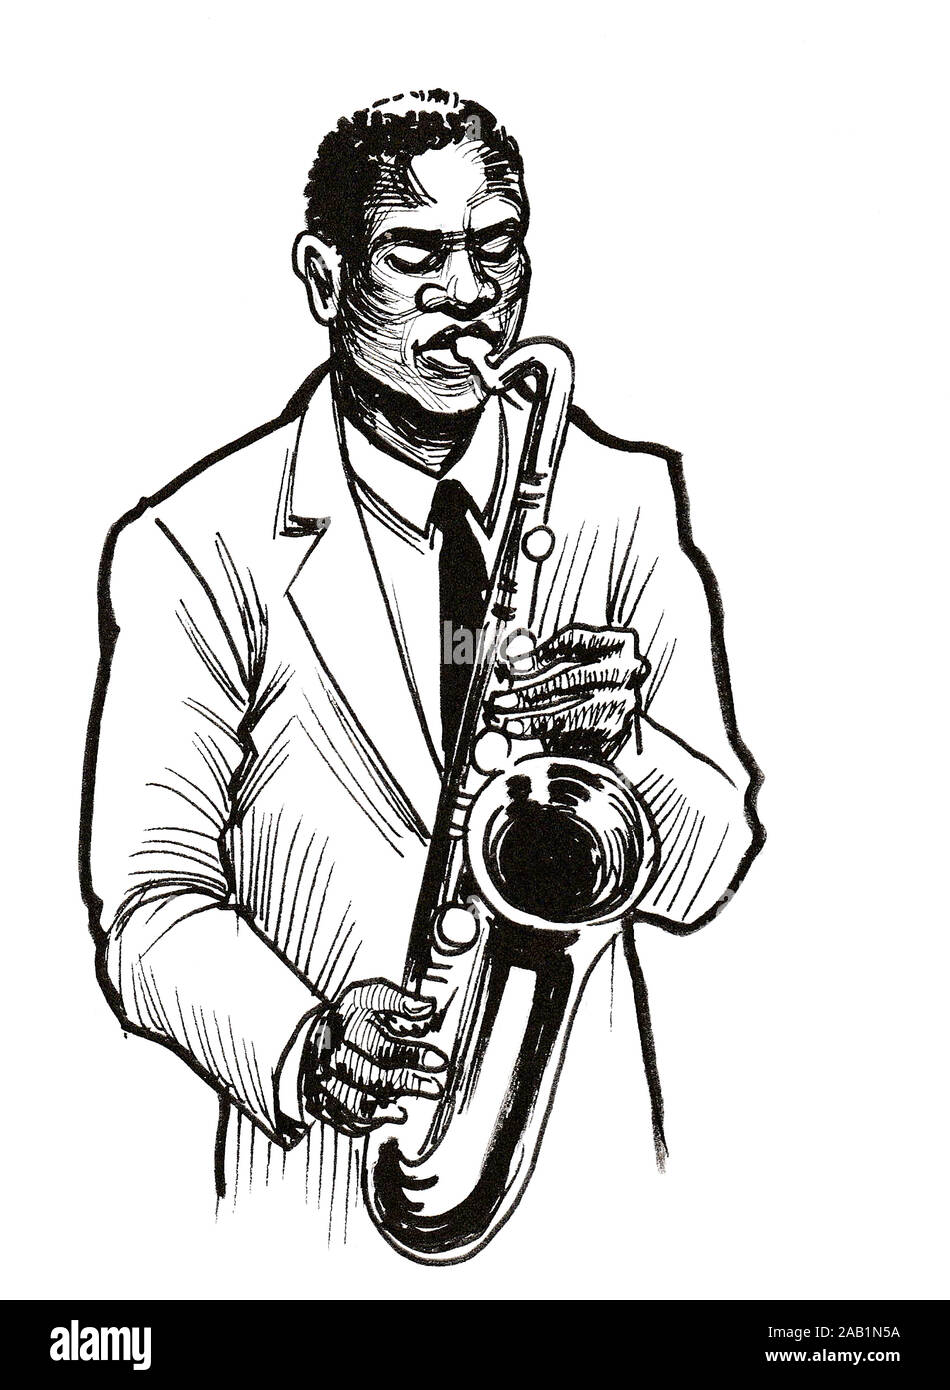 Musicien Noir à jouer du saxophone. Dessin noir et blanc Encre Banque D'Images